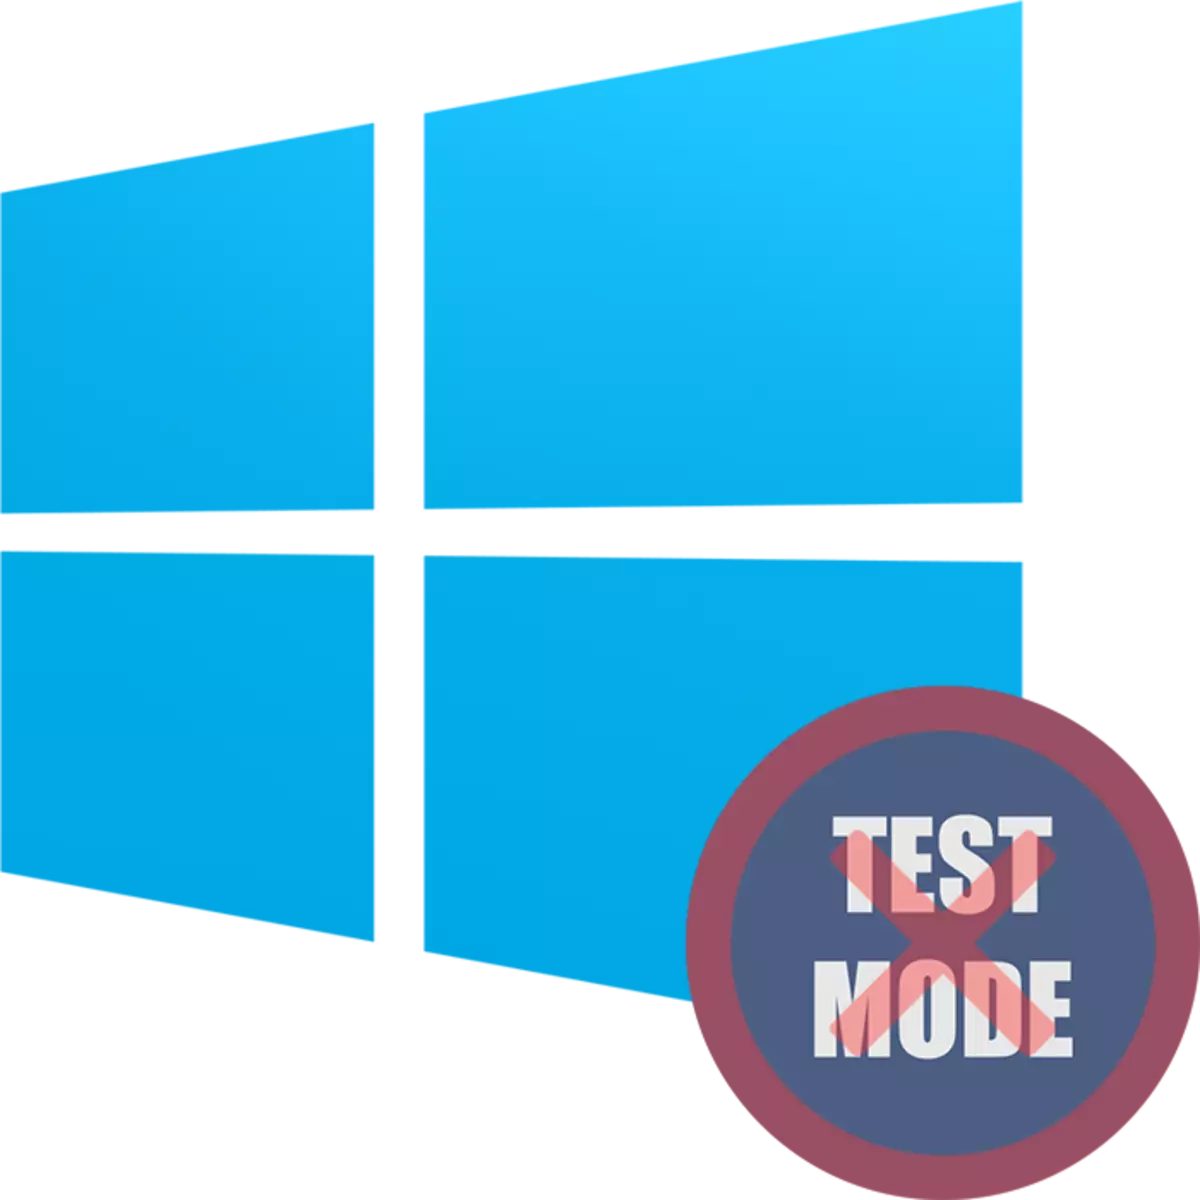 Windows 10'da Test Modunu Devre Dışı Bırakılır